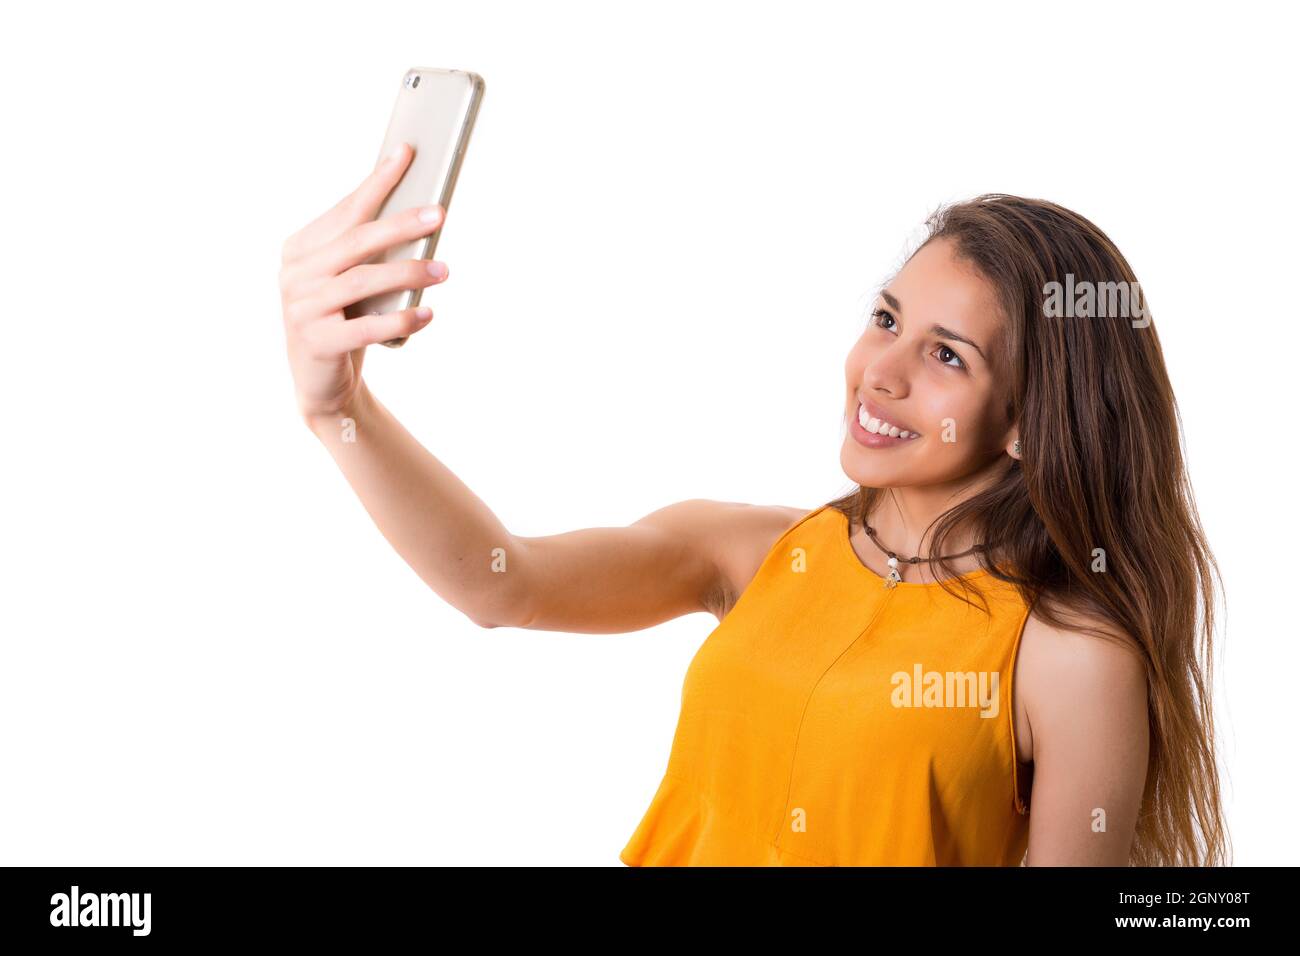 Glückliche junge Frau unter Selbstporträt Fotografie durch Smartphone auf weißem Hintergrund. Stockfoto